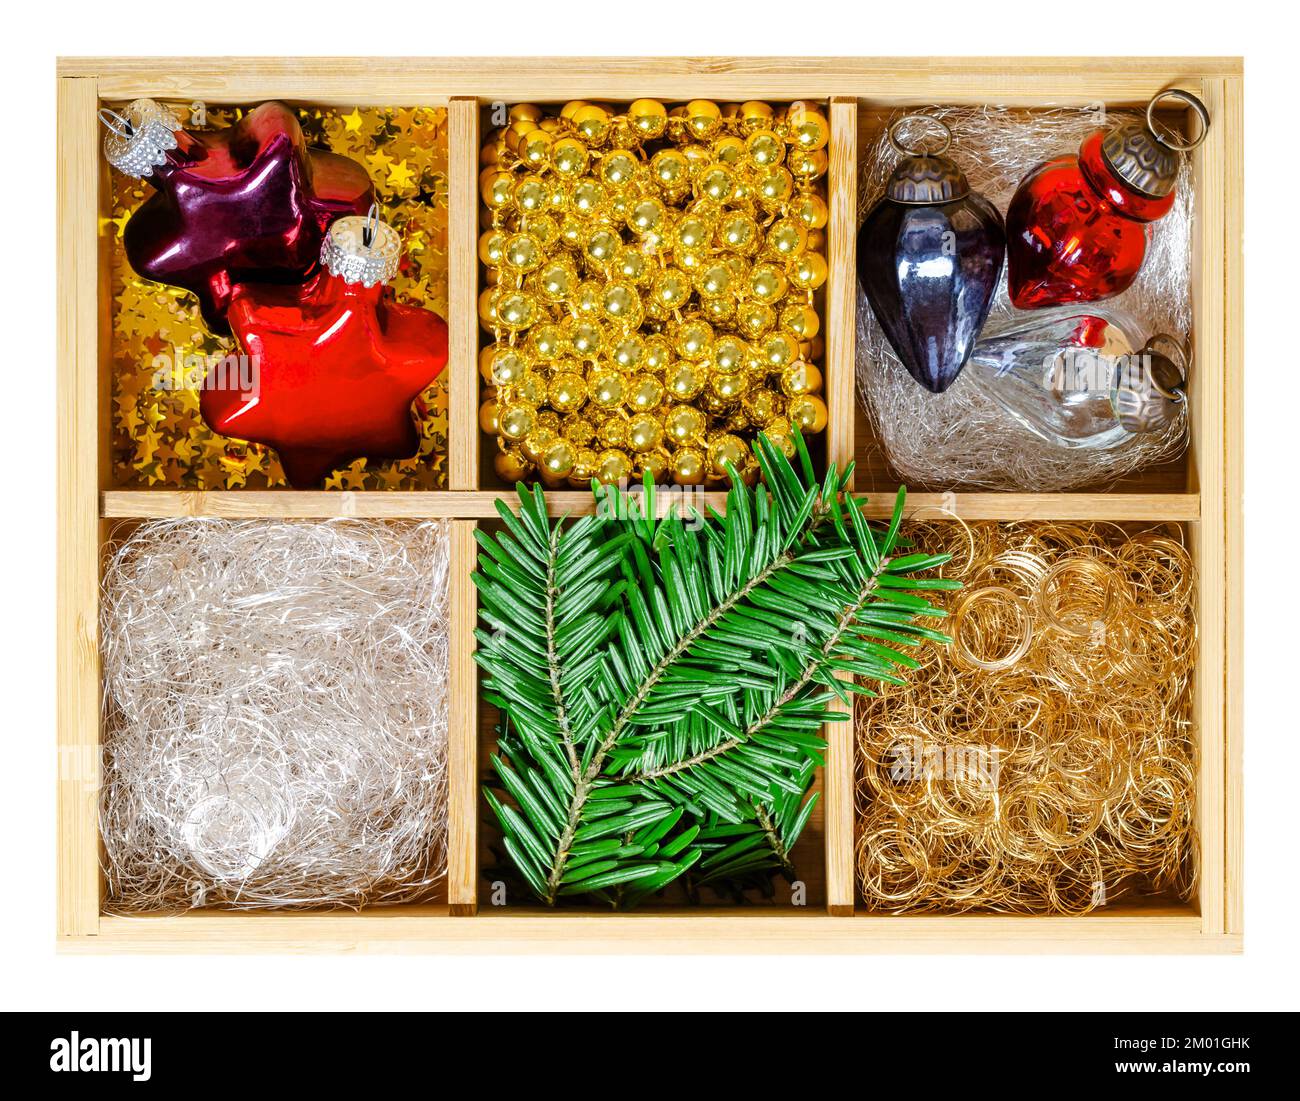 Ornamenti natalizi in scatola di legno. Bulbi di vetro di Natale a forma di stella e ghianda, capelli d'angelo d'argento e d'oro, ghirlande di perle d'oro e rami di abete. Foto Stock